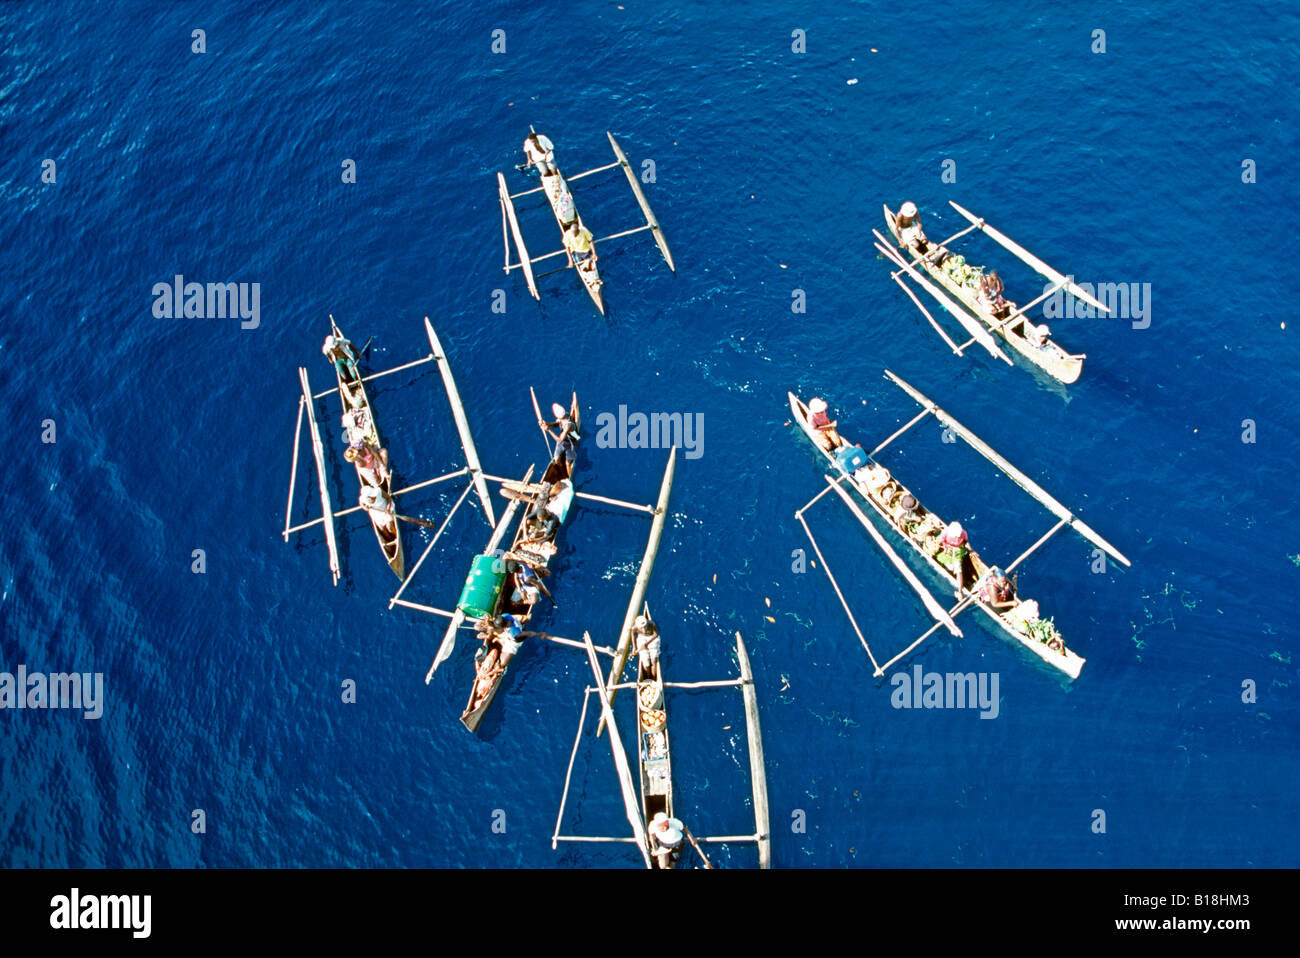 Handelsdugouts unter dem Kreuzschiff Hell-ville Hafen Nosy Be Insel Madagaskar Indischer Ozean Stockfoto